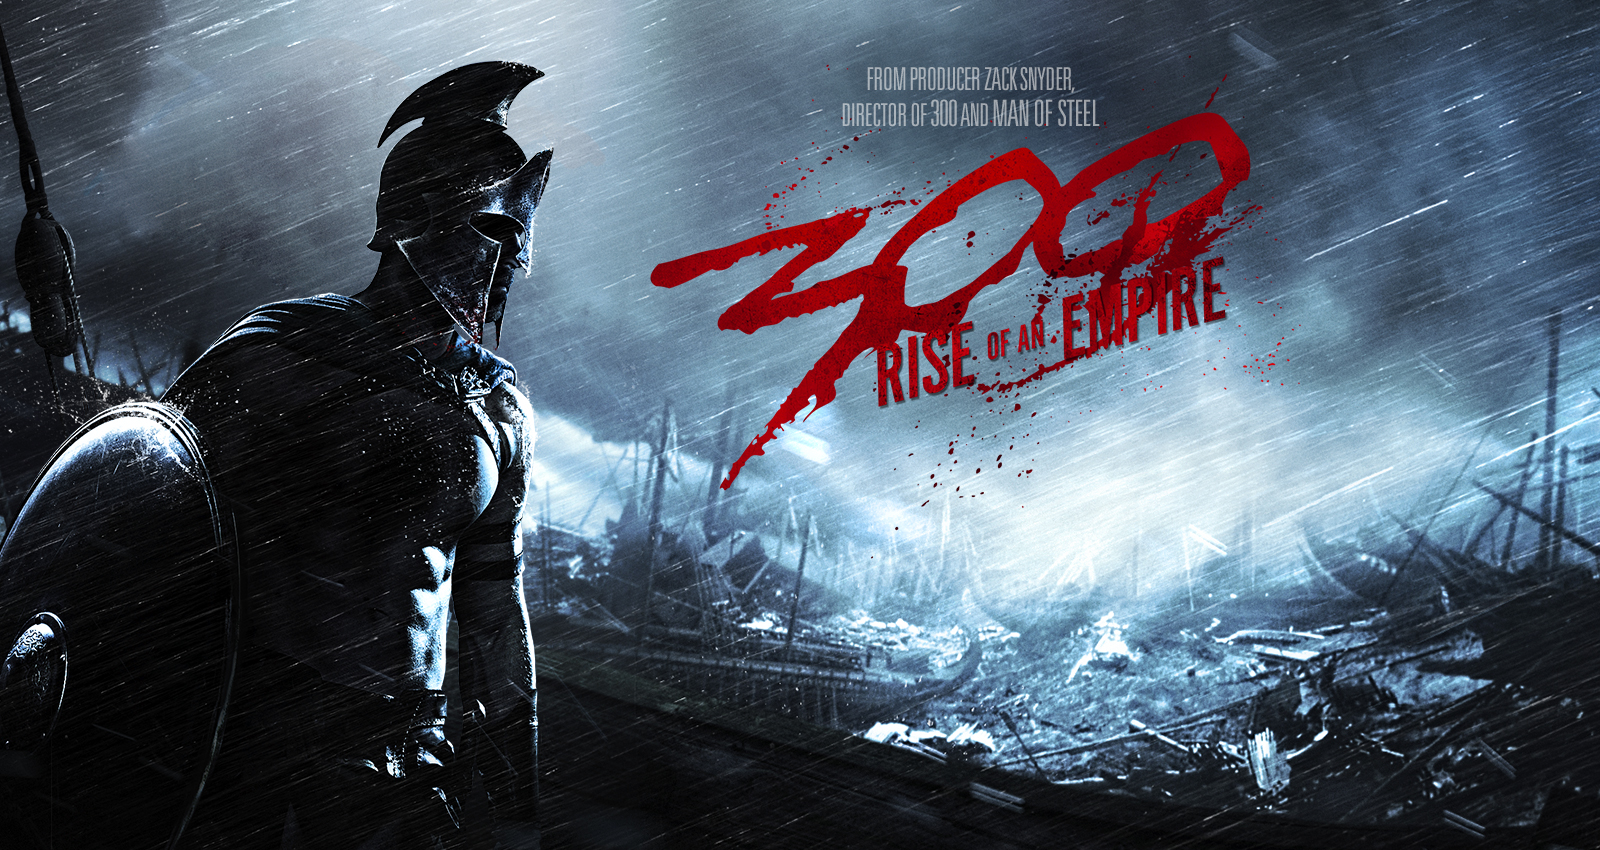 Δείτε το trailer της ταινίας “300: Rise of an Empire”